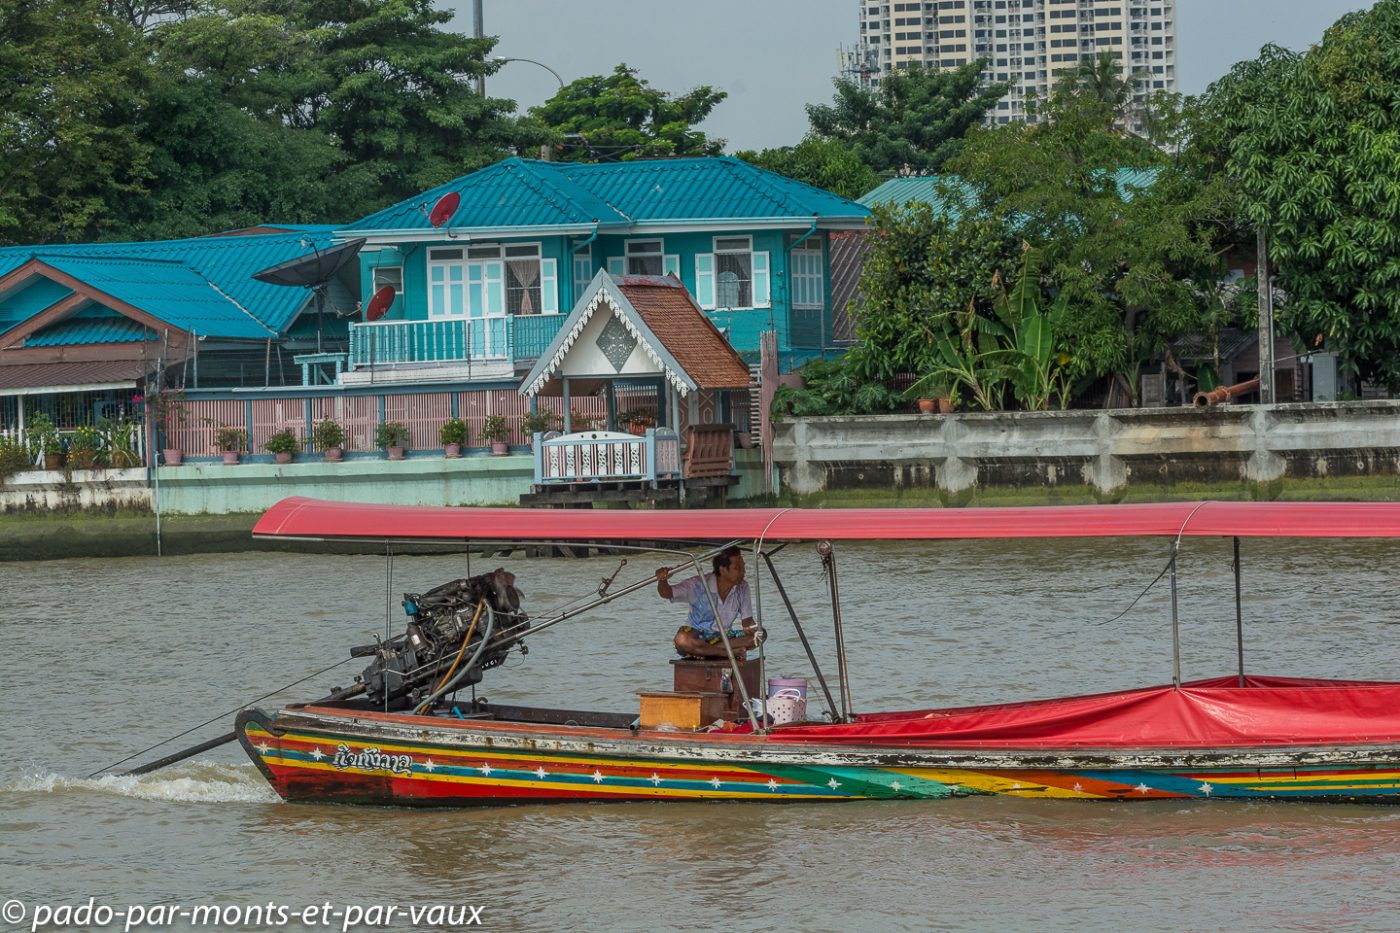 Chao Phraya river